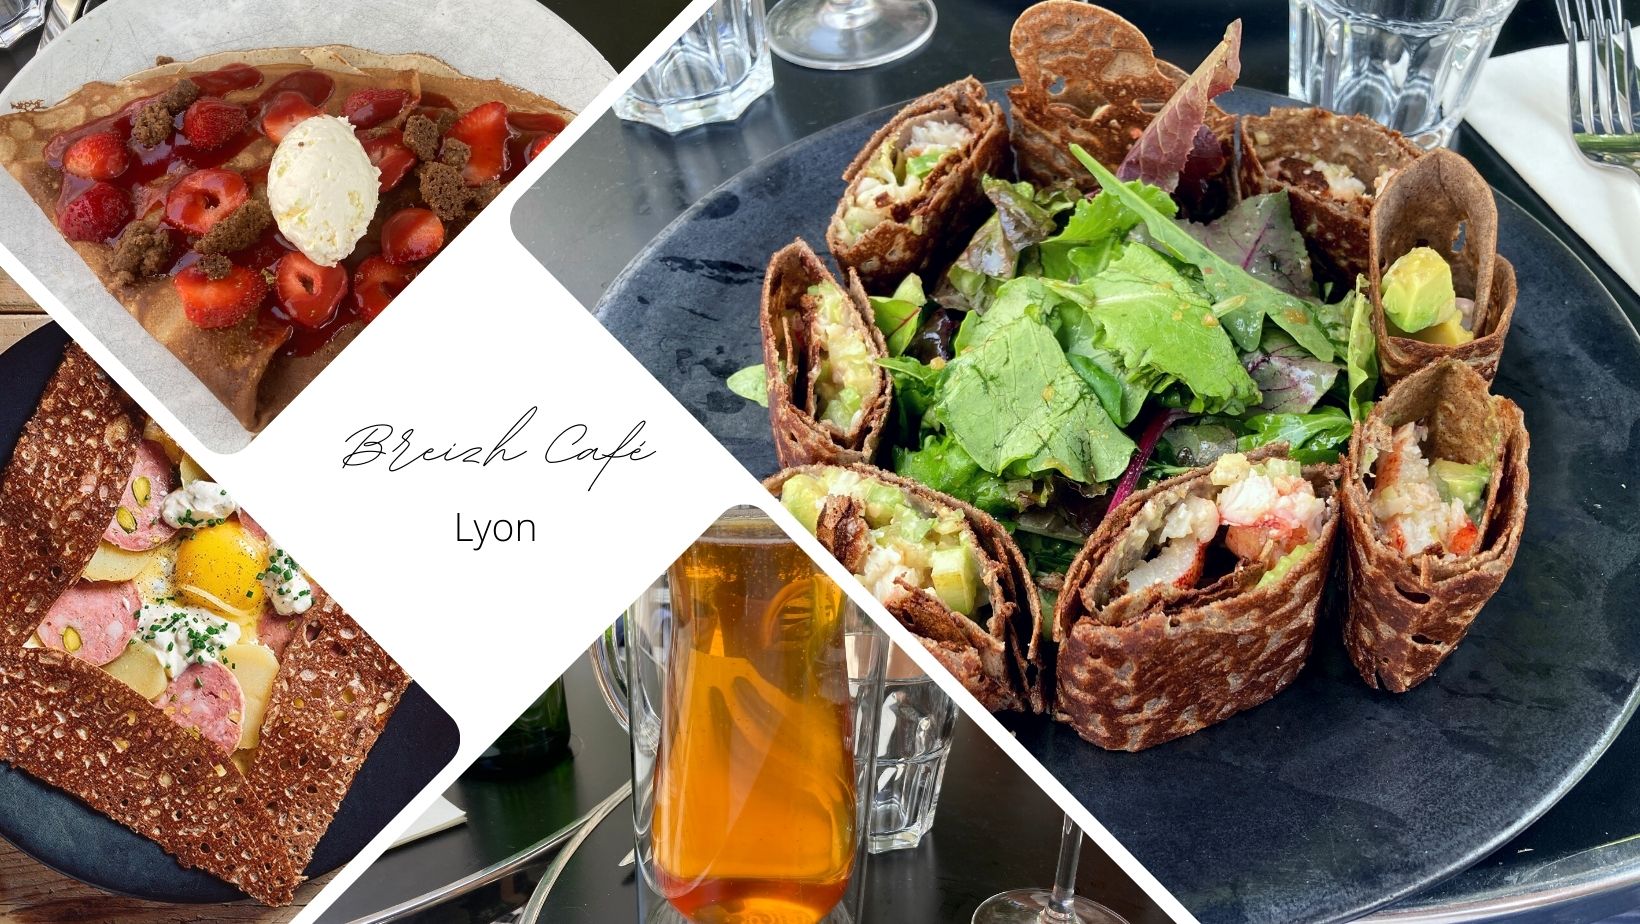 Breizh Café Lyon, crêperie contemporaine